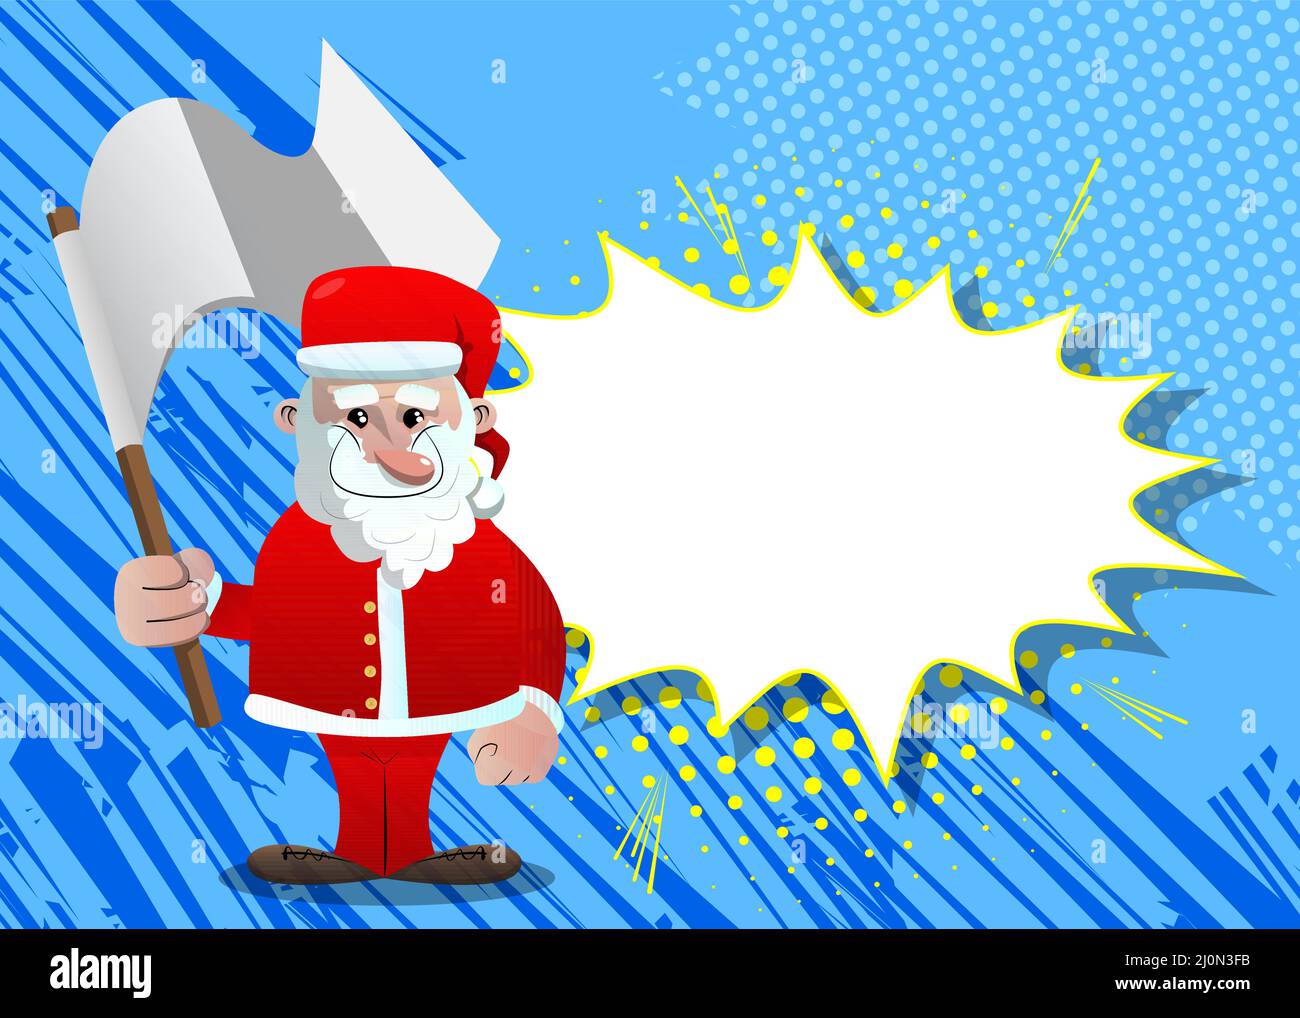 Babbo Natale nei suoi vestiti rossi con barba bianca regge la bandiera bianca della resa. Illustrazione del carattere vettoriale del cartone animato. Illustrazione Vettoriale